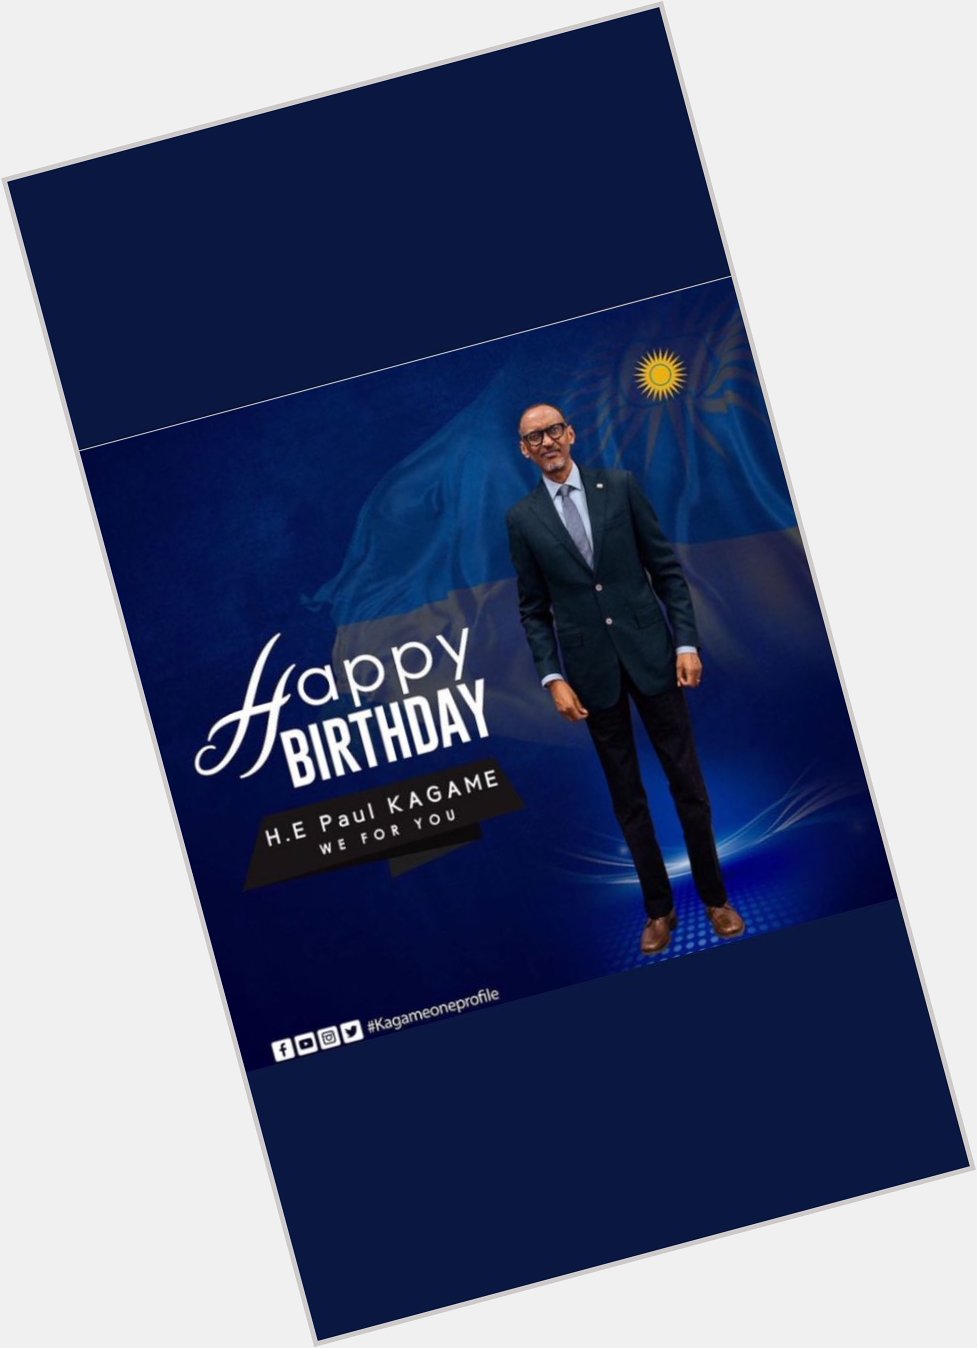 Happy birthday H.E Paul Kagame  Uri Impano Imana yahaye igihugu cyacu Dukunda. We For you! 